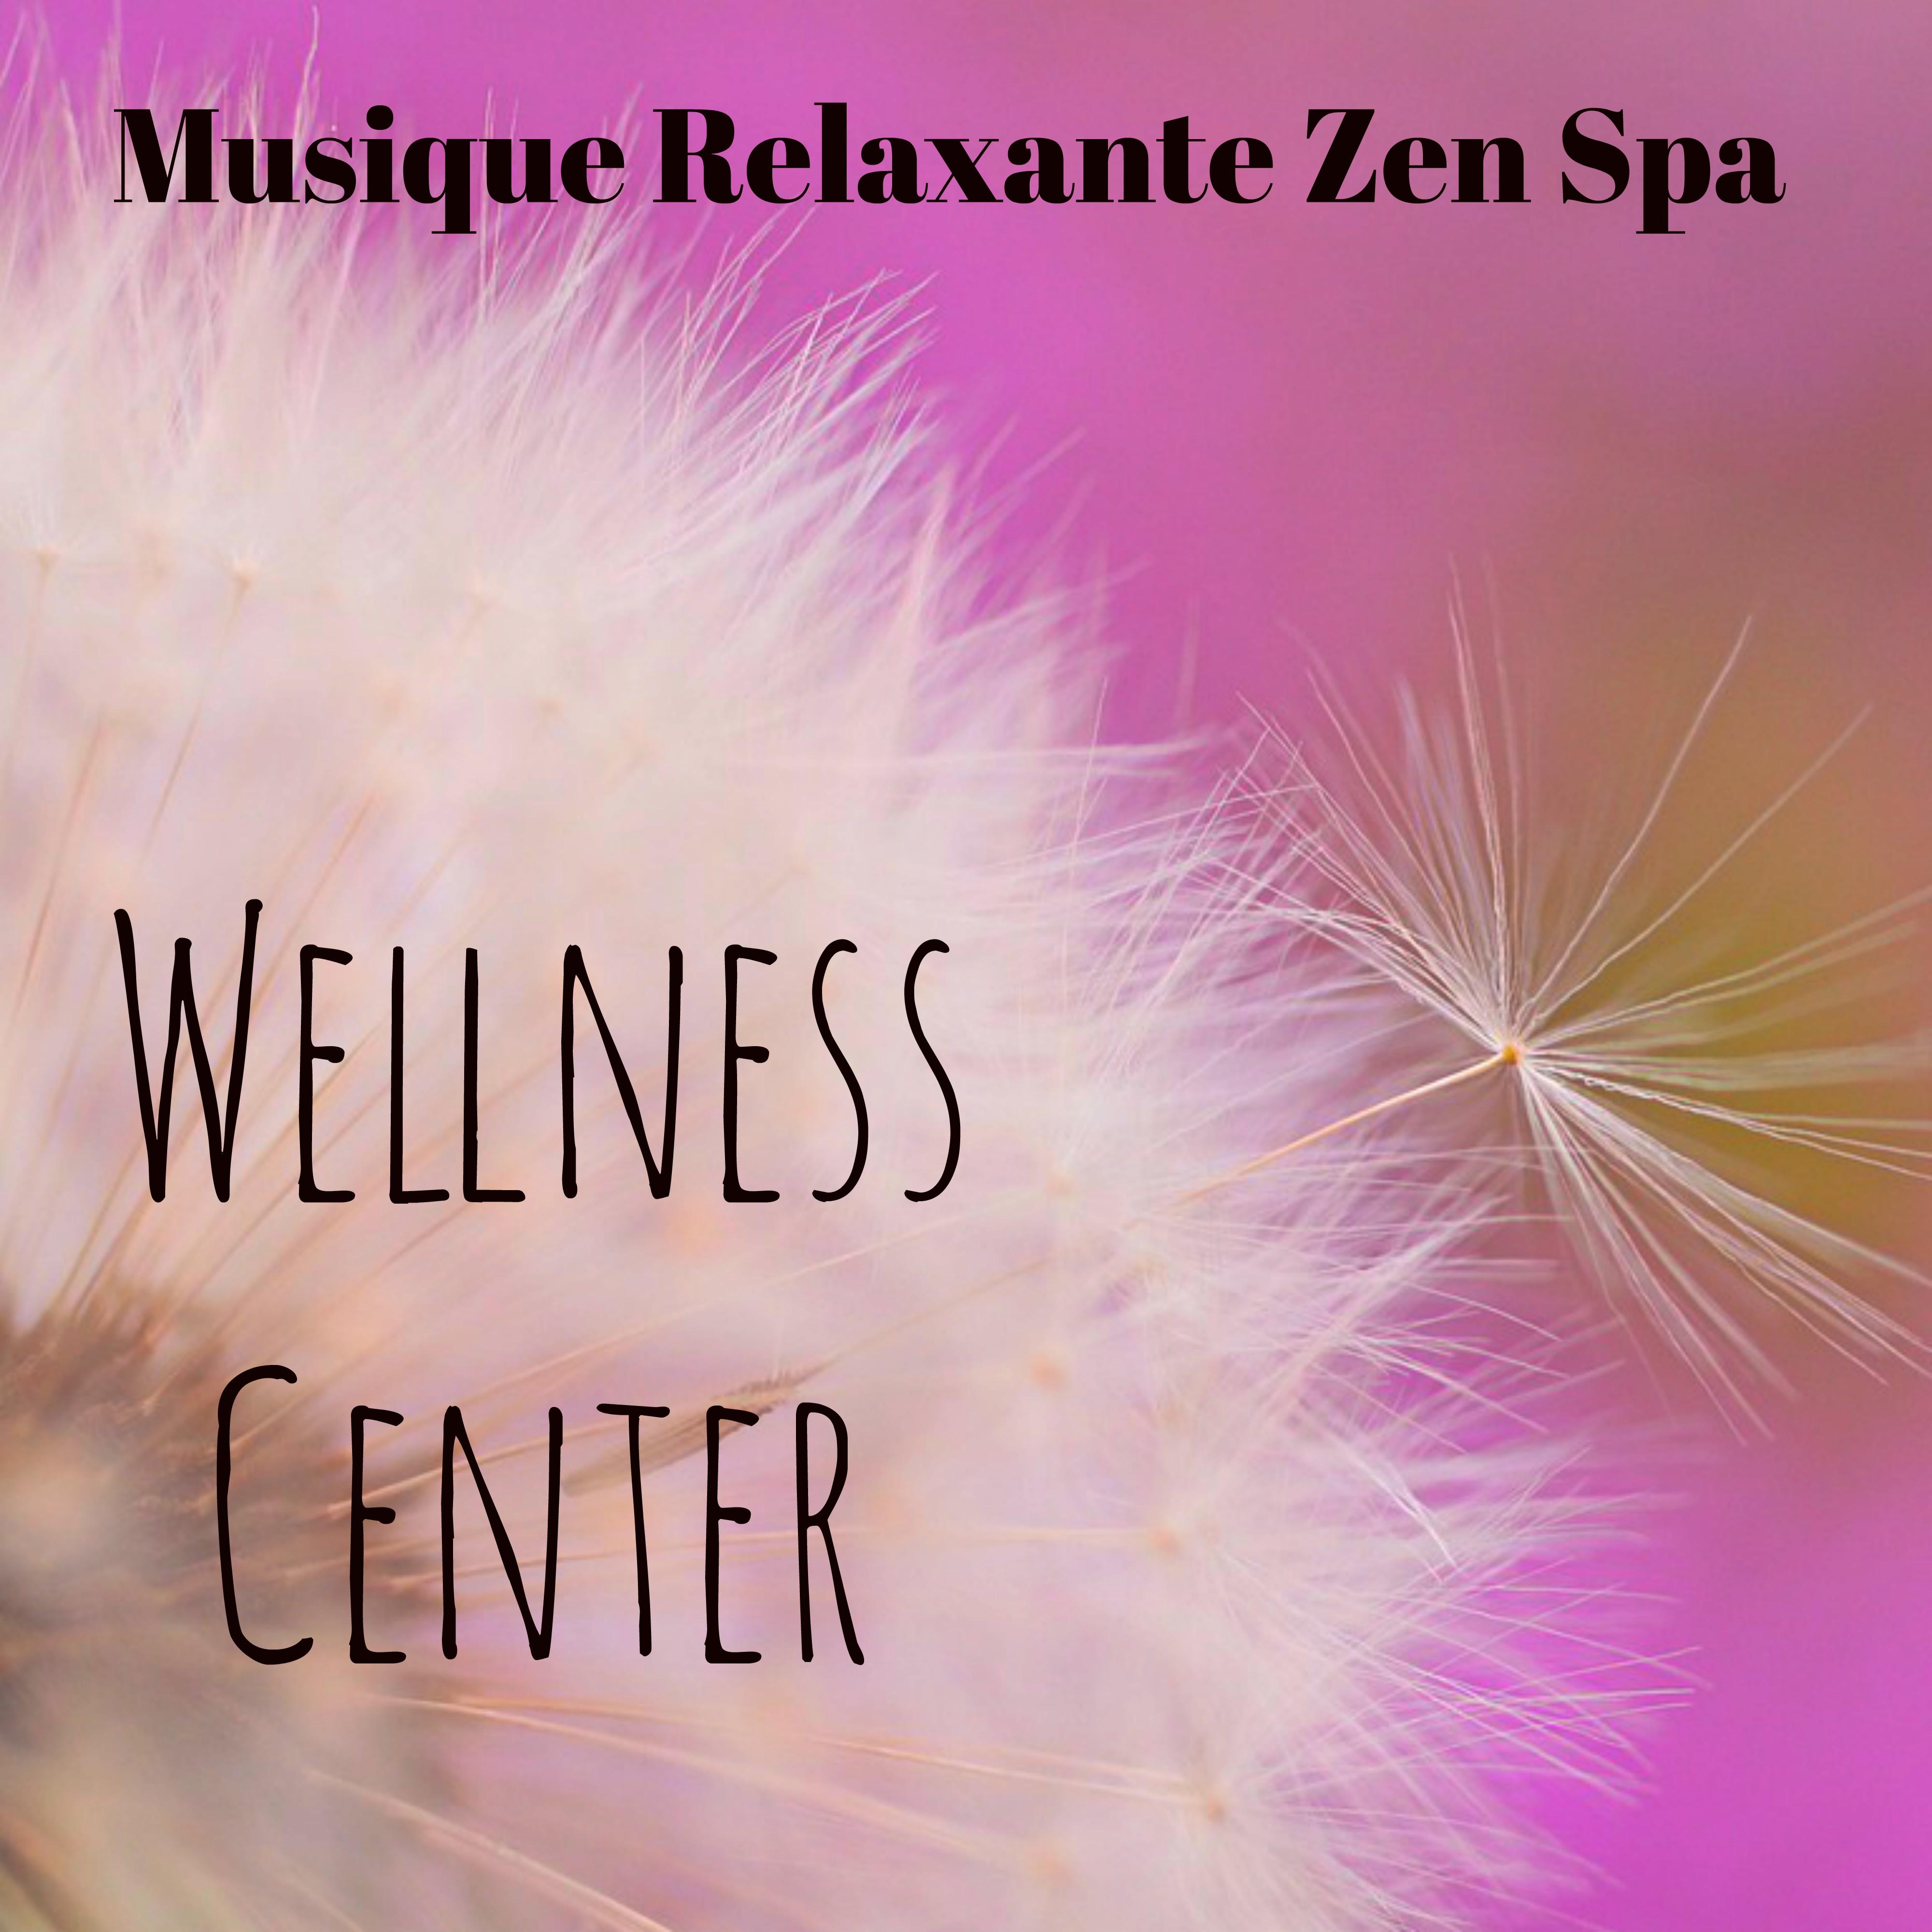 Wellness Center  Musique Relaxante Zen Spa pour Exercices de Concentration Massothe rapie Sante et Bien Etre avec Sons de la Nature Instrumentaux Binauraux New Age